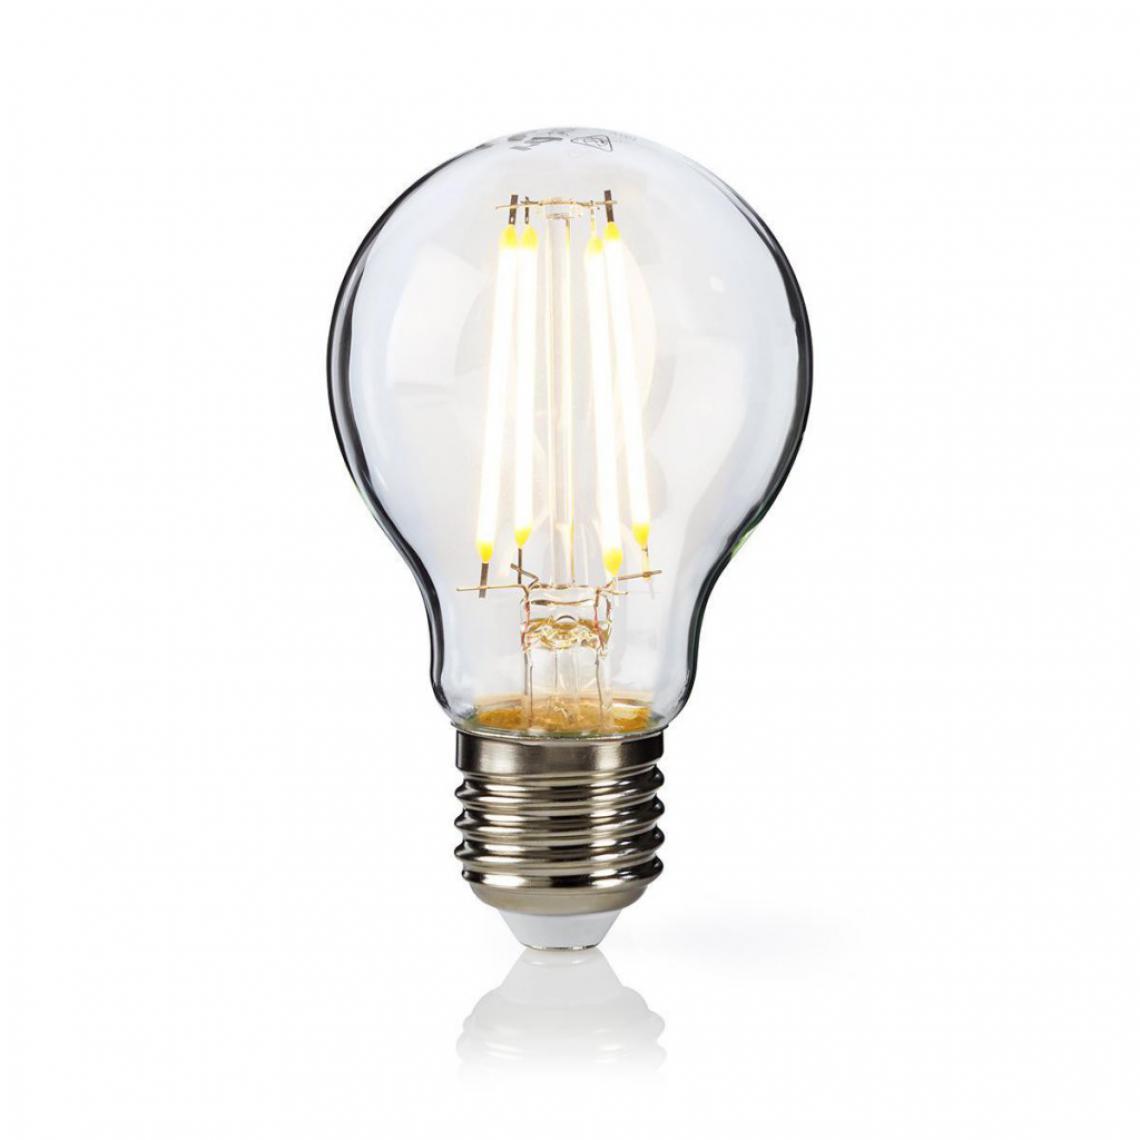 Alpexe - Lampe à Incandescence LED Rétro Réglable E27 | A60 | 8.6 W | 1 055 lm - Ampoules LED